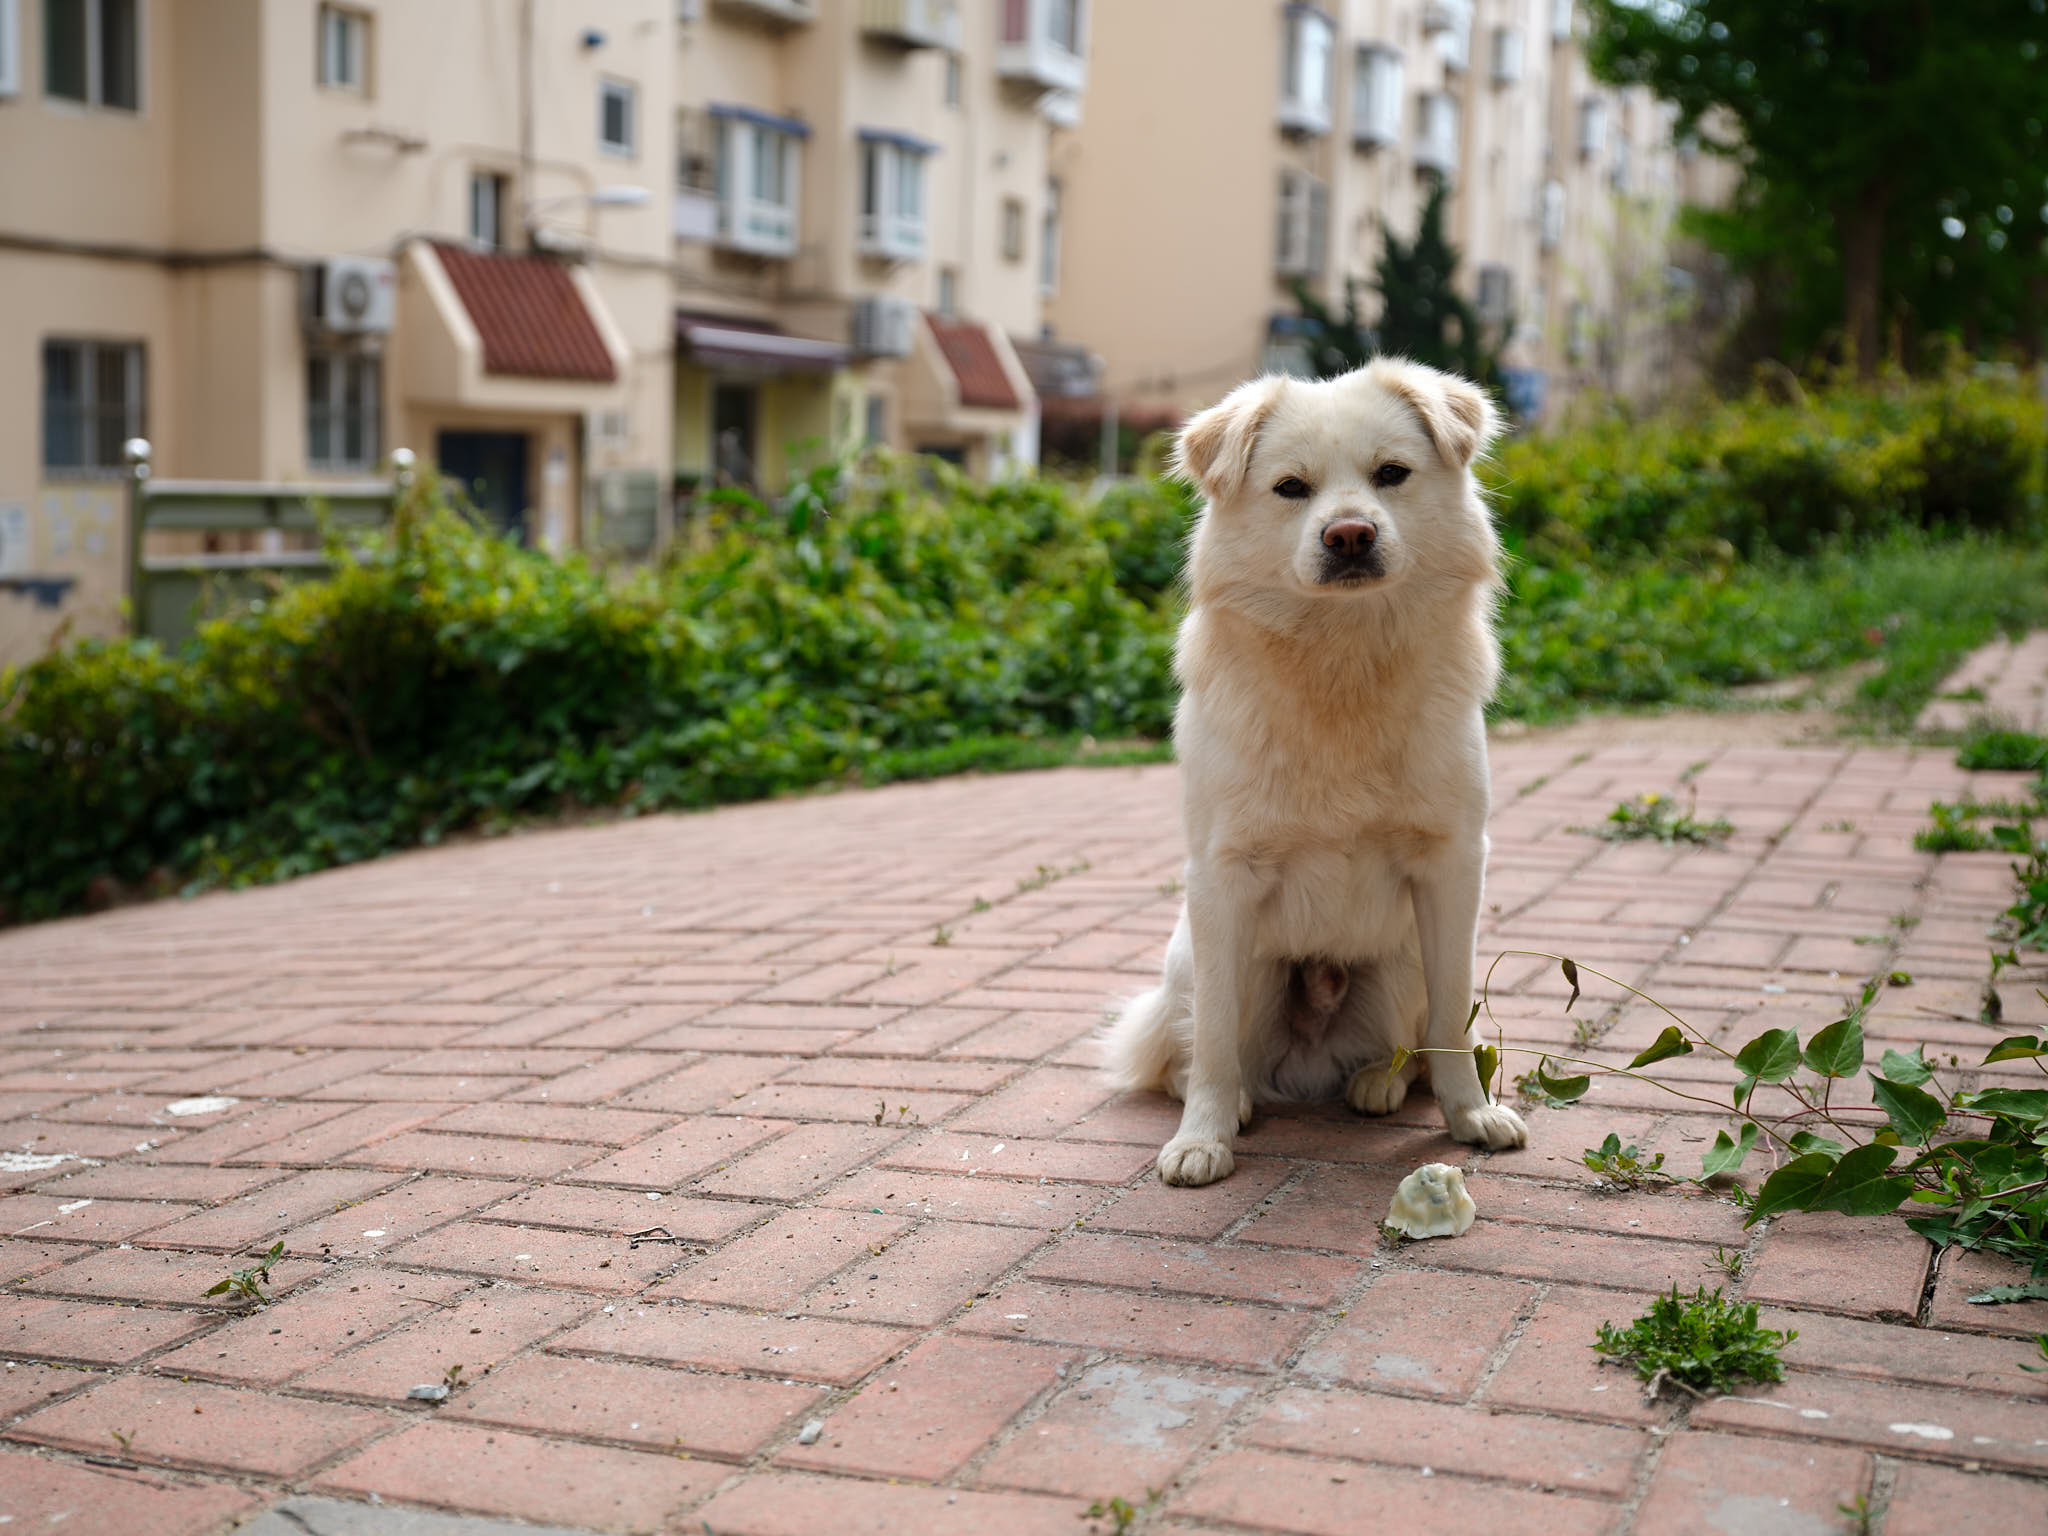 Cute dog refusing food in Qingdao